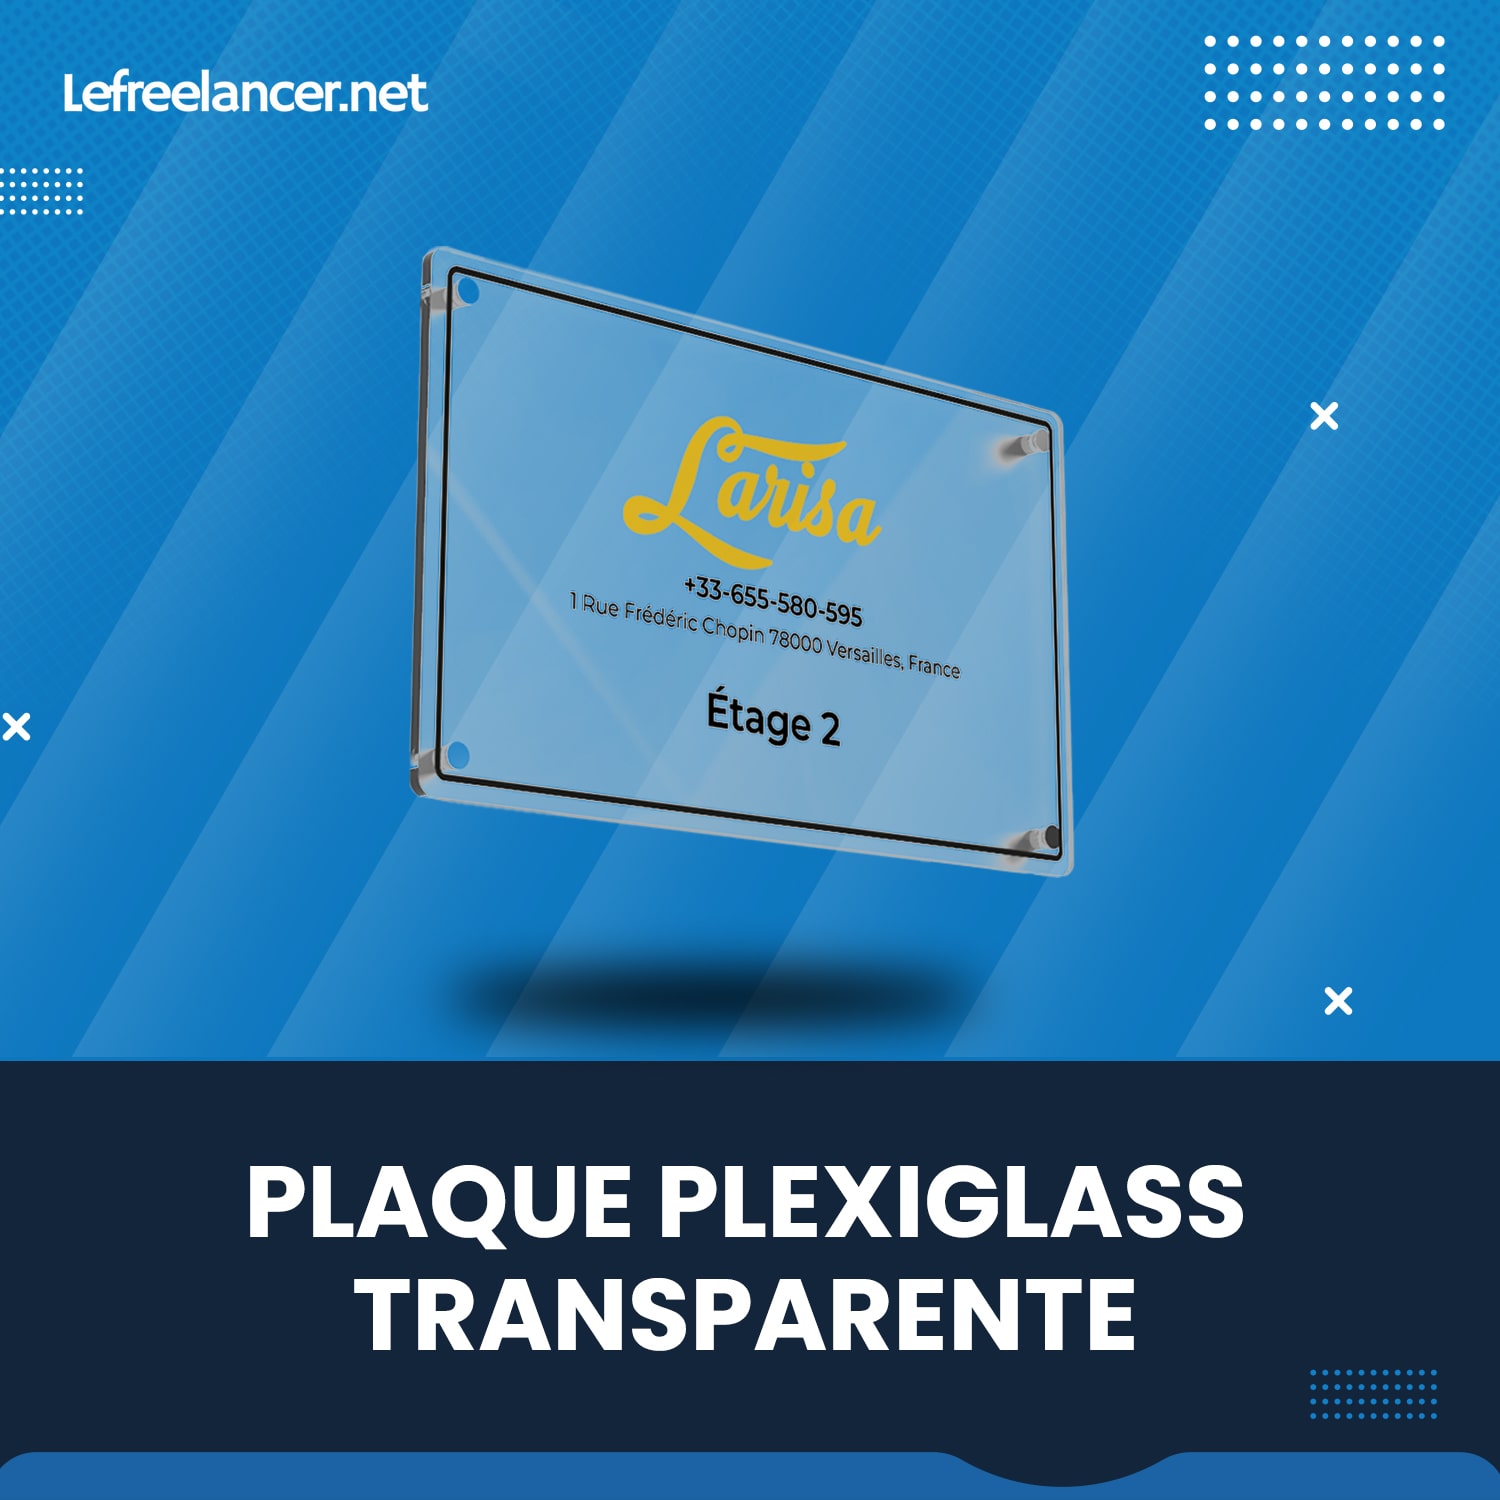 Plaque Plexiglass Transparente